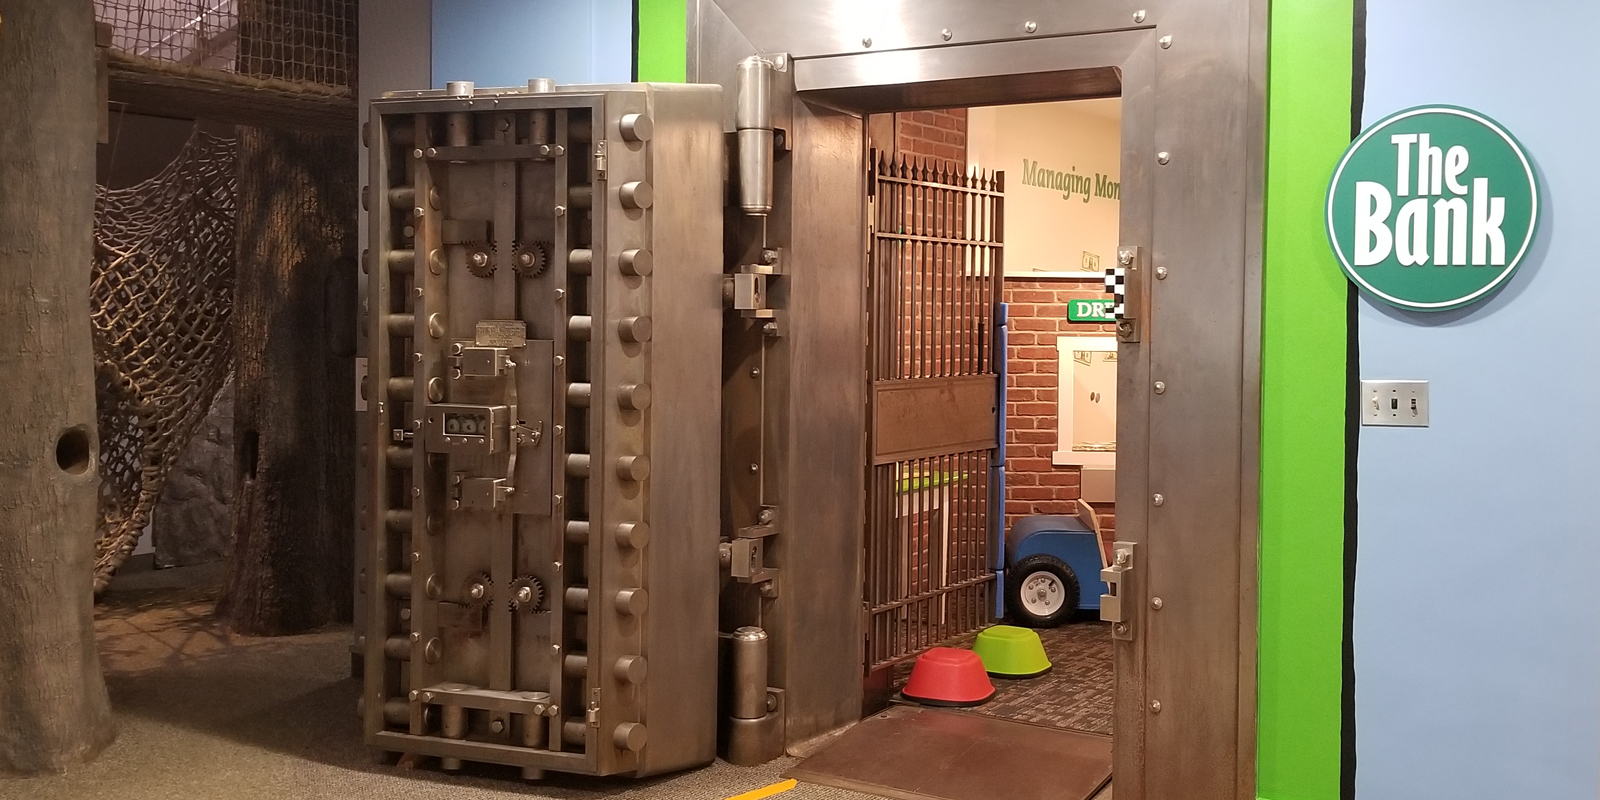 Exhibit of bank vault with green trim and a heavy looking vault door open.